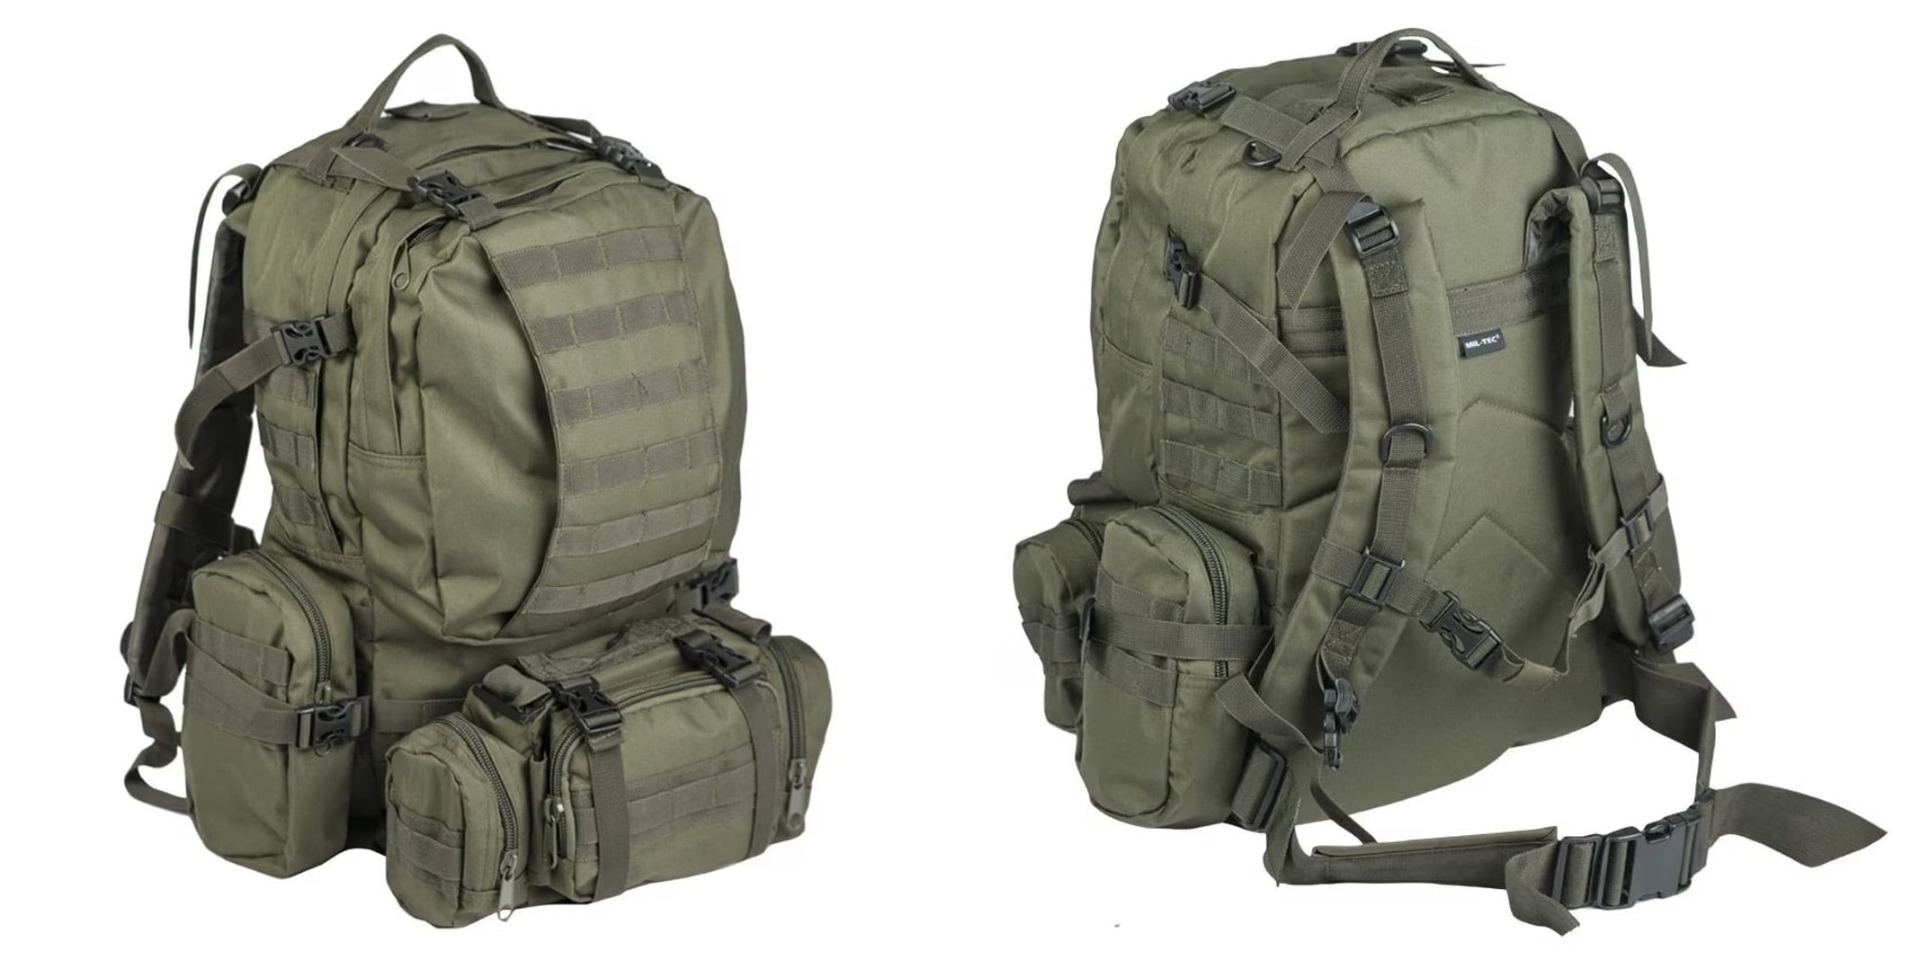 Izberite najboljši vojaški nahrbtnik - Defense Pack Assembly, prostornine 36 litrov, v olivni barvi. Trpežen, udoben in vodoodporen za vojake, pohodnike, lovce in kamping navdušence. Opremljen.si - nakupite zdaj!